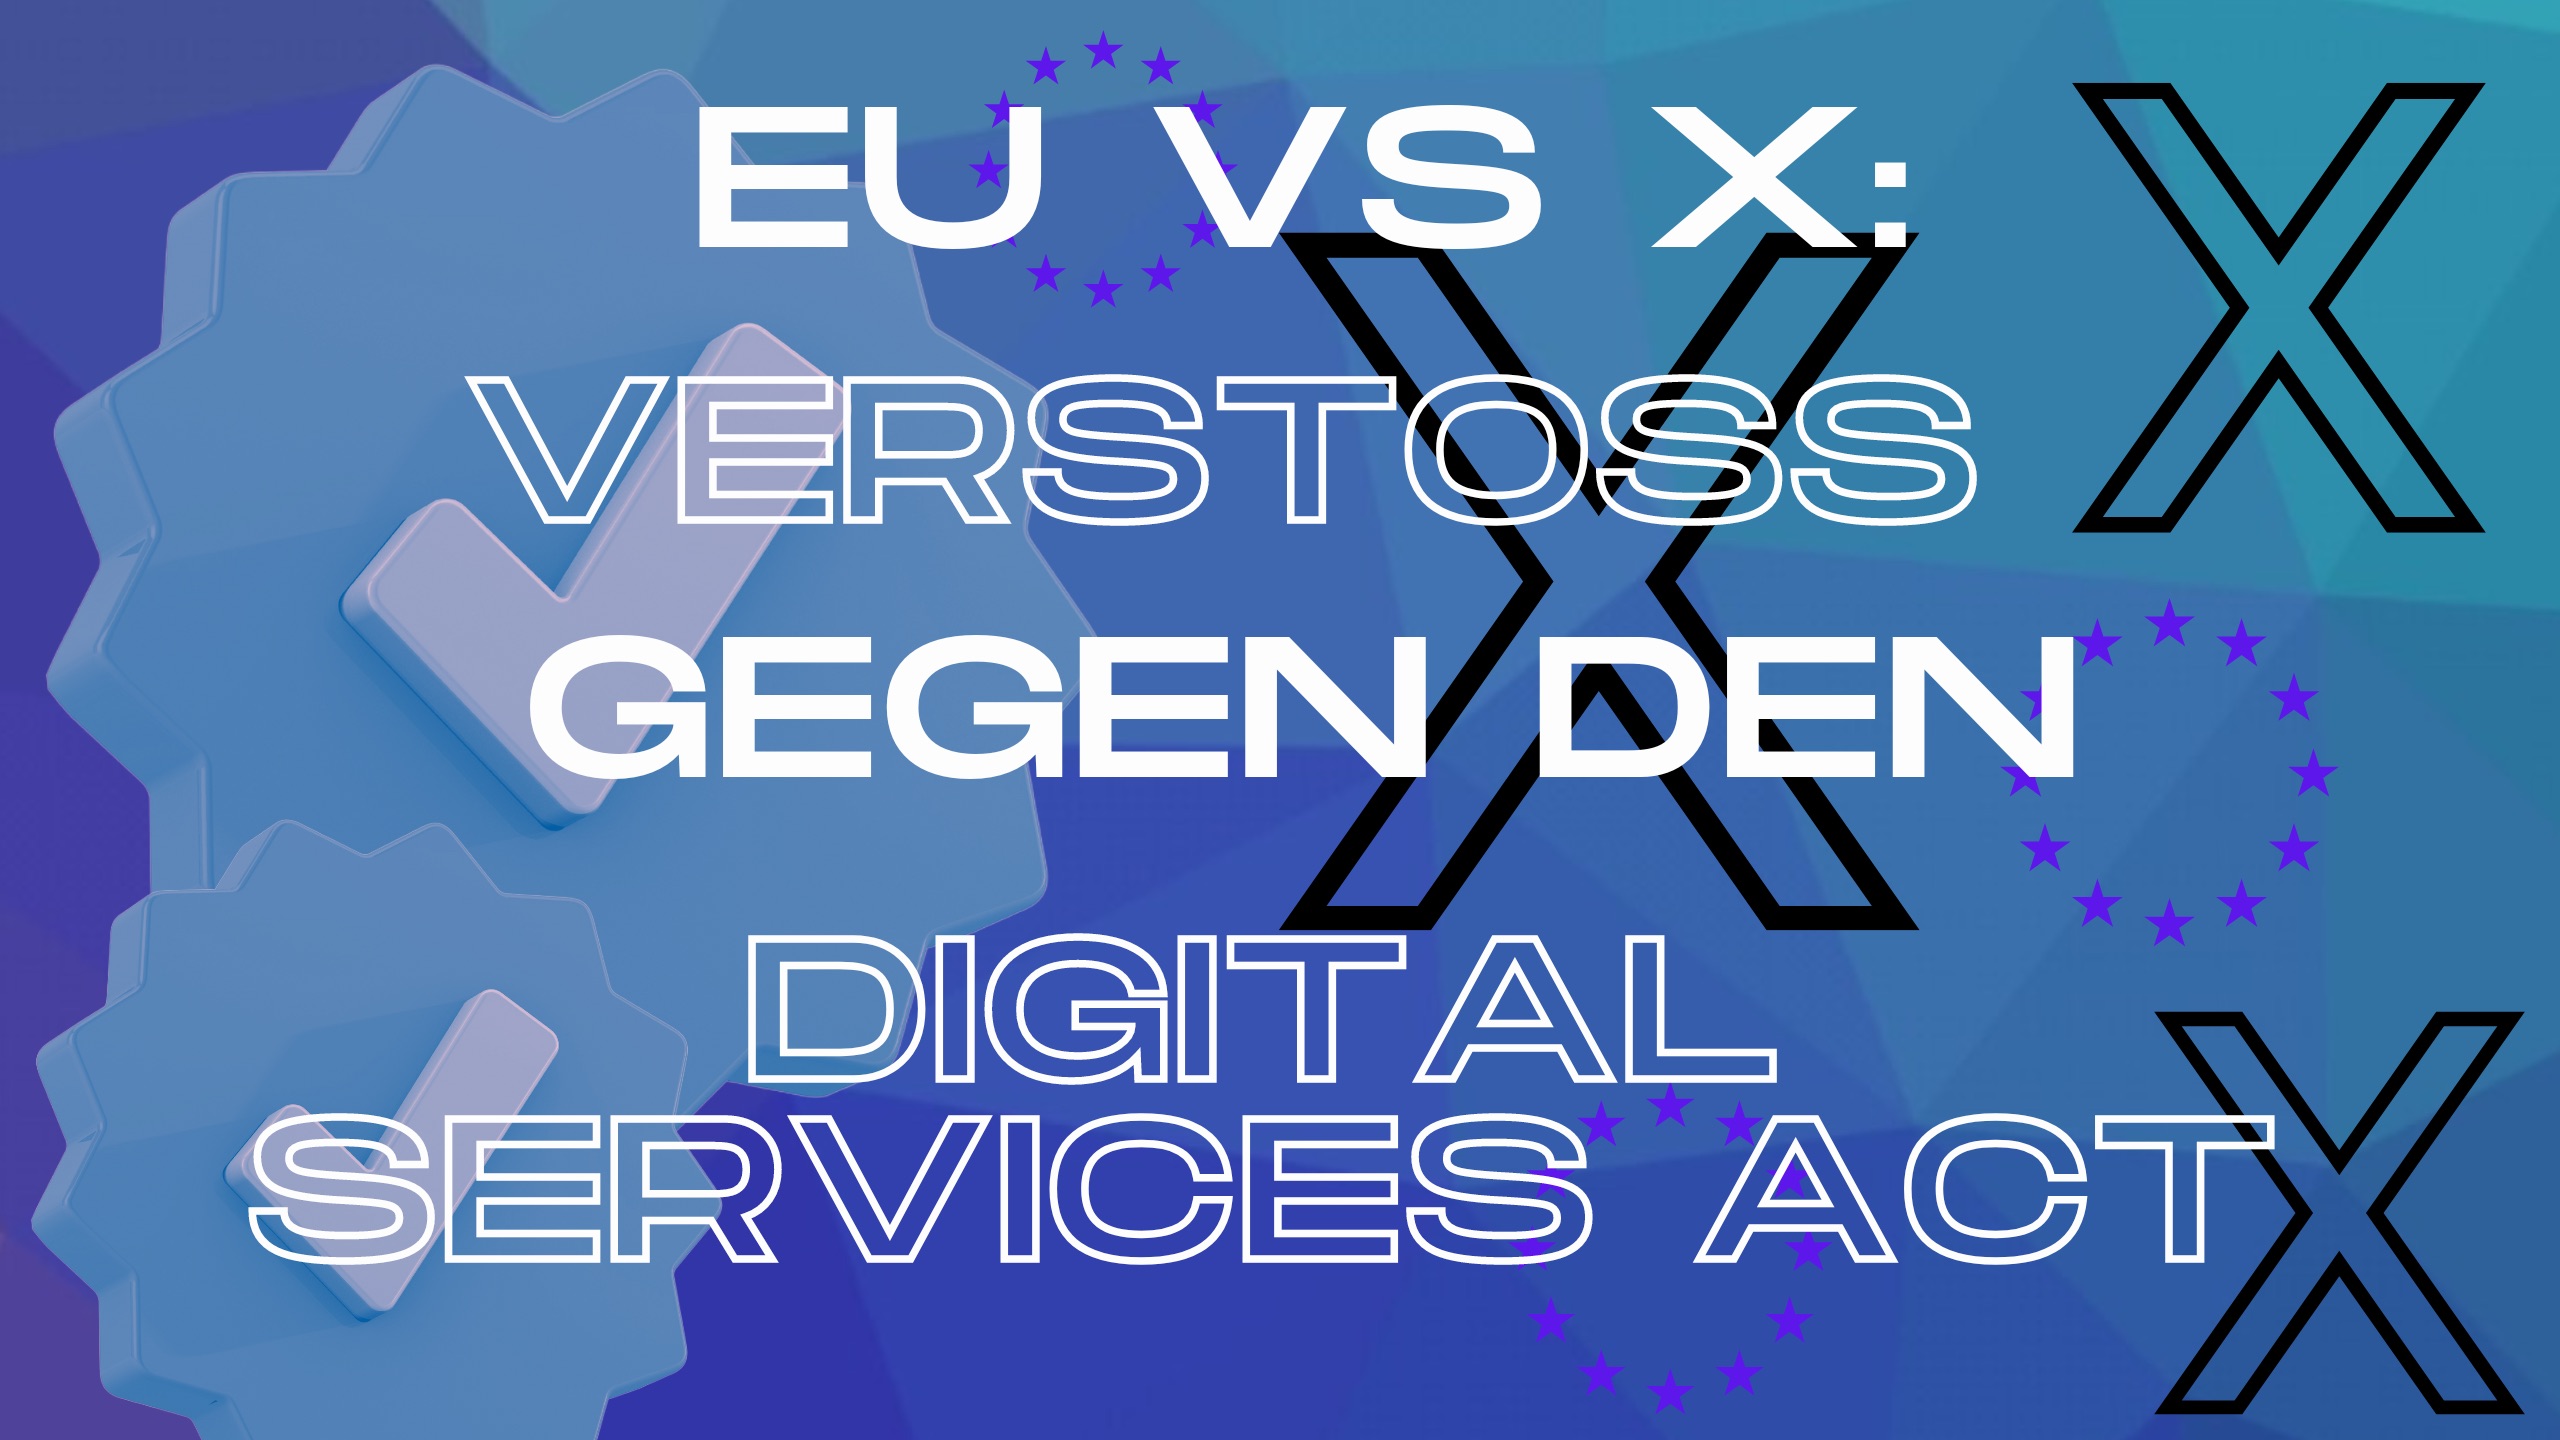 Digital-Services-Act-Verst-t-X-gegen-die-EU-Verordnung-